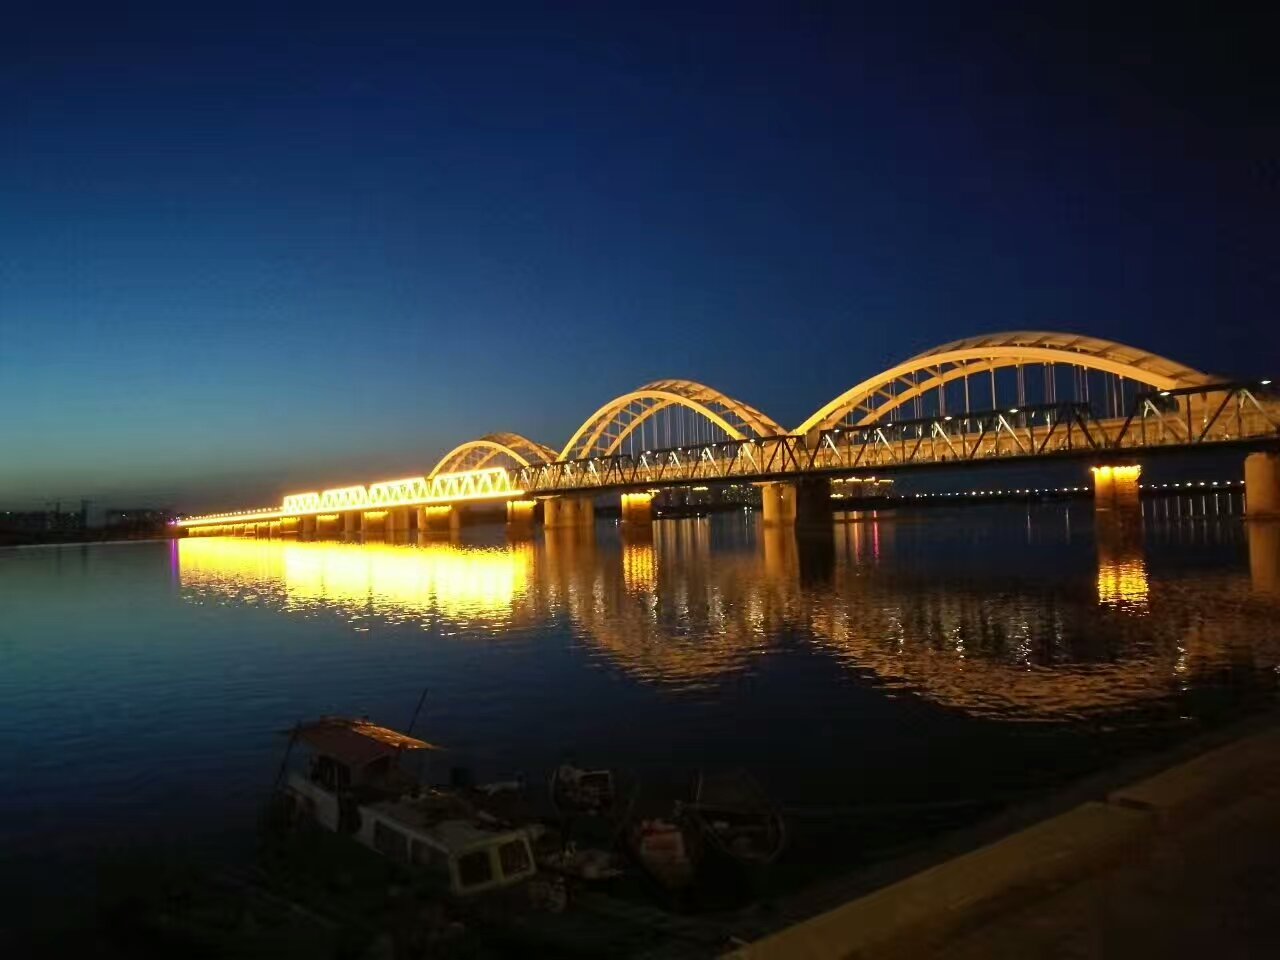 吉林市松花江大桥夜景图片